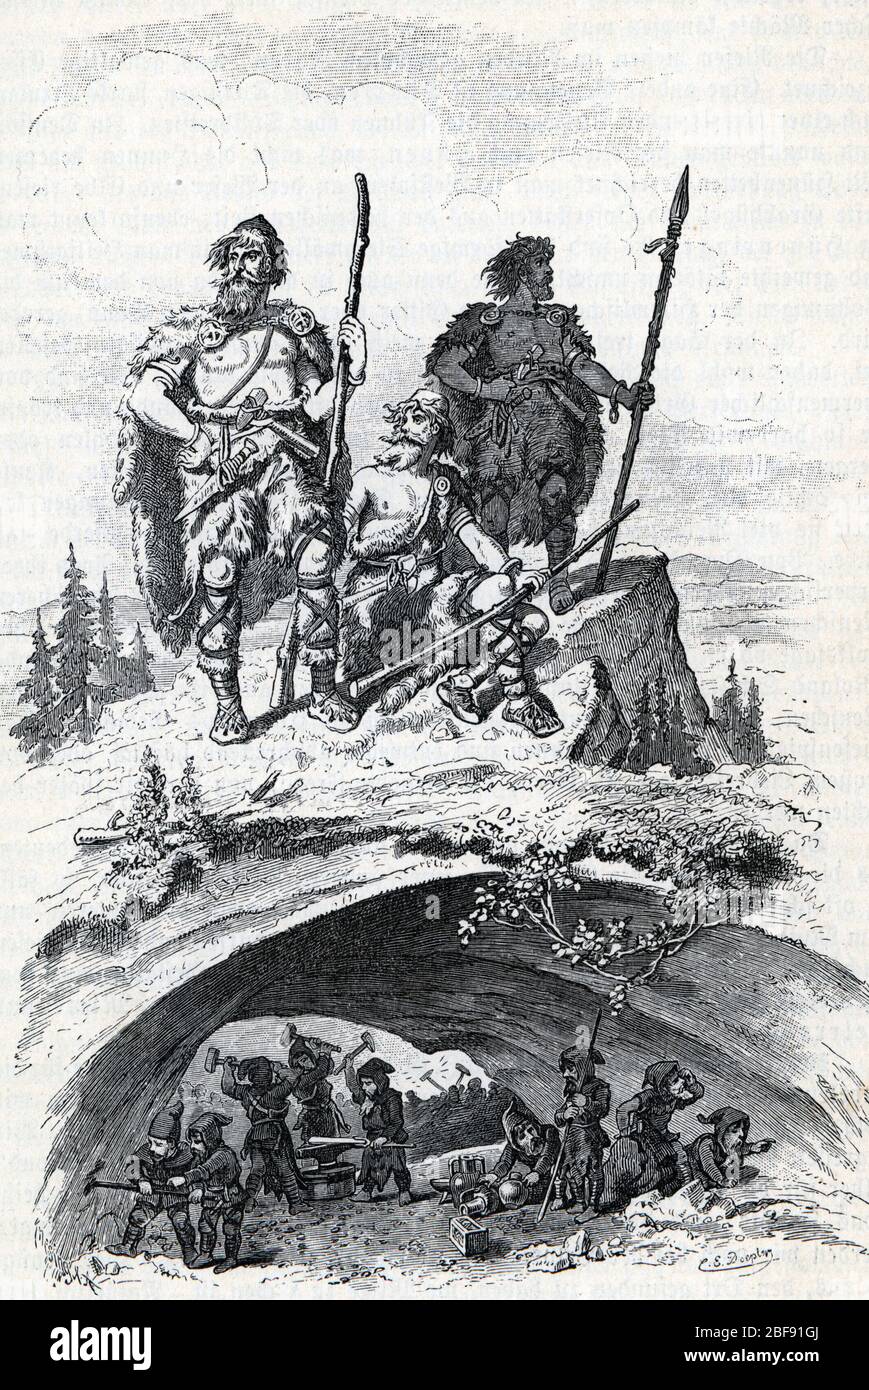 Mythologie nordique : les Nains et les geants (jotunn ou jotnar) (nordische Mythologie : die jotun, Riesen und die Zwerge (dvergr)) Gravure tiree de 'Nord Stockfoto